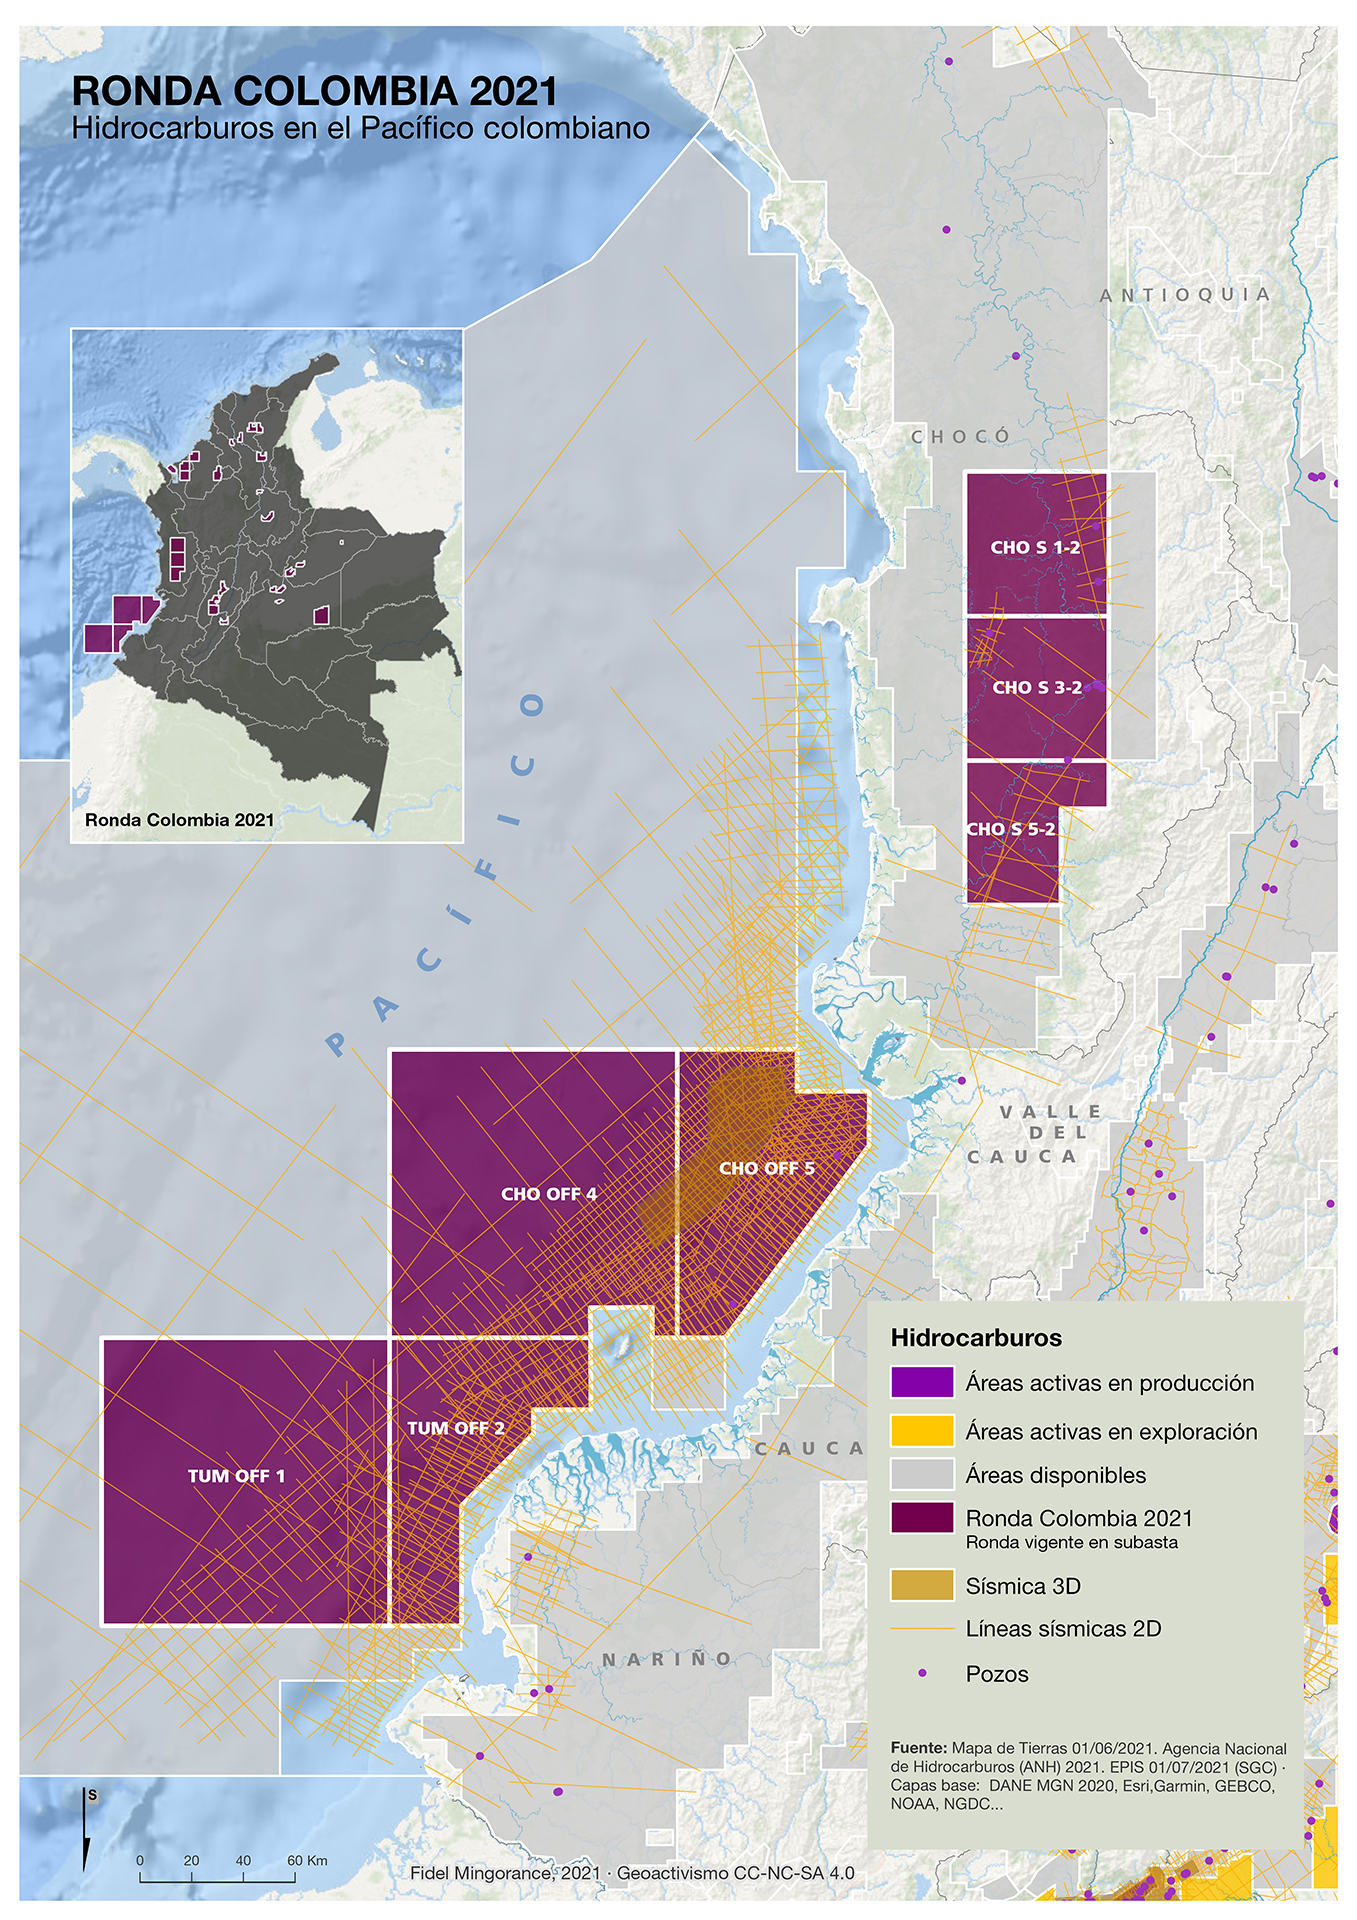 Hidrocarburos en el Pacífico colombiano, julio 2021